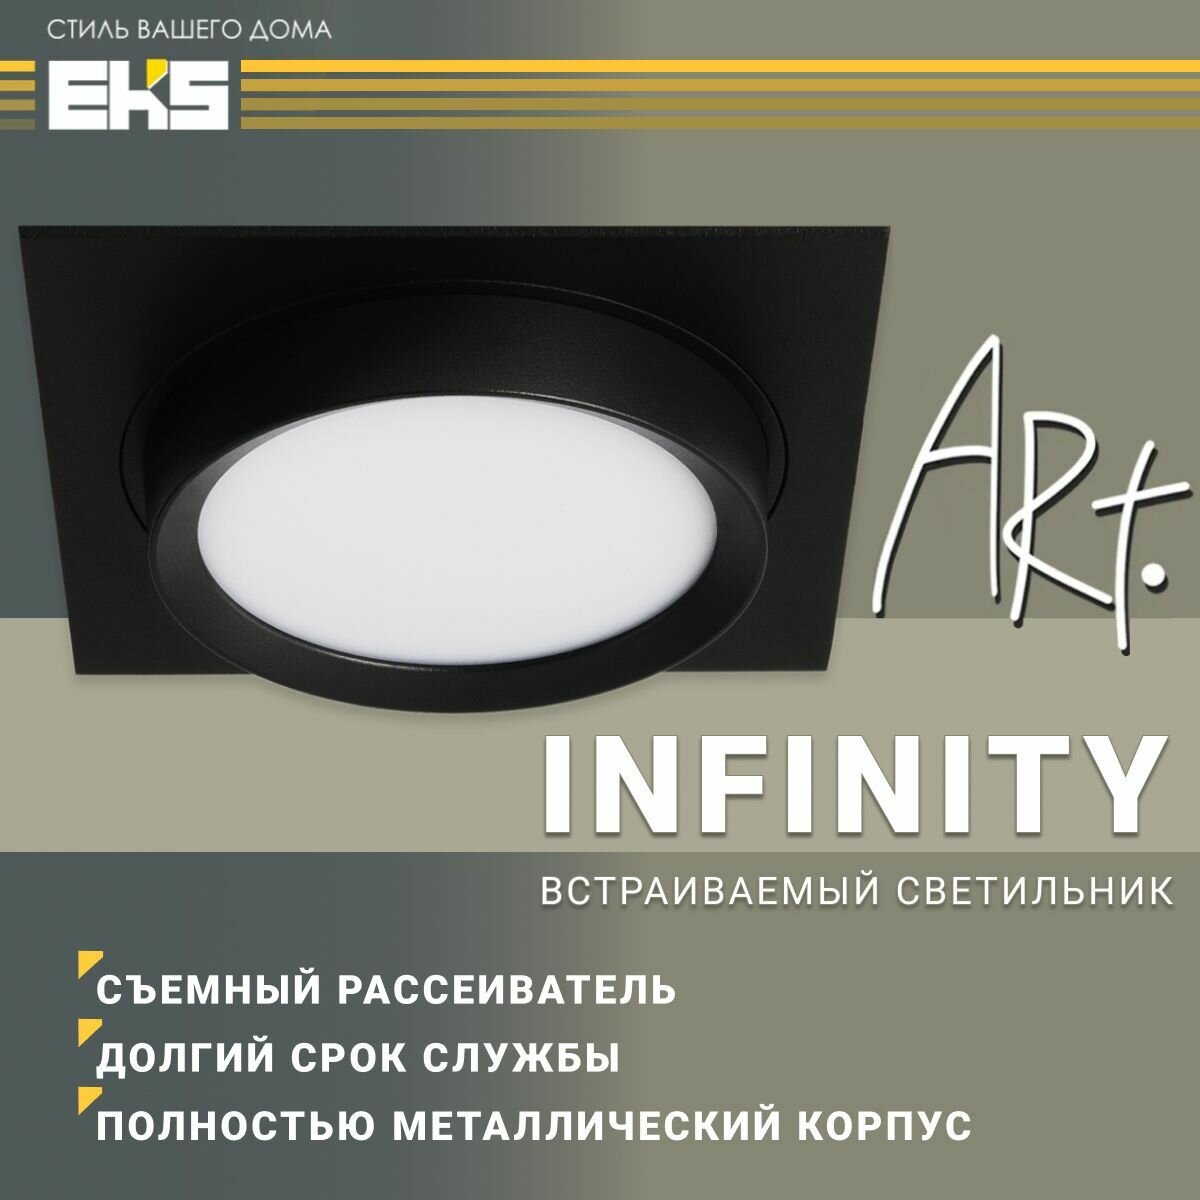 Встраиваемый светильник EKS Art Infinity черный (GX53, алюминий), 1 шт.